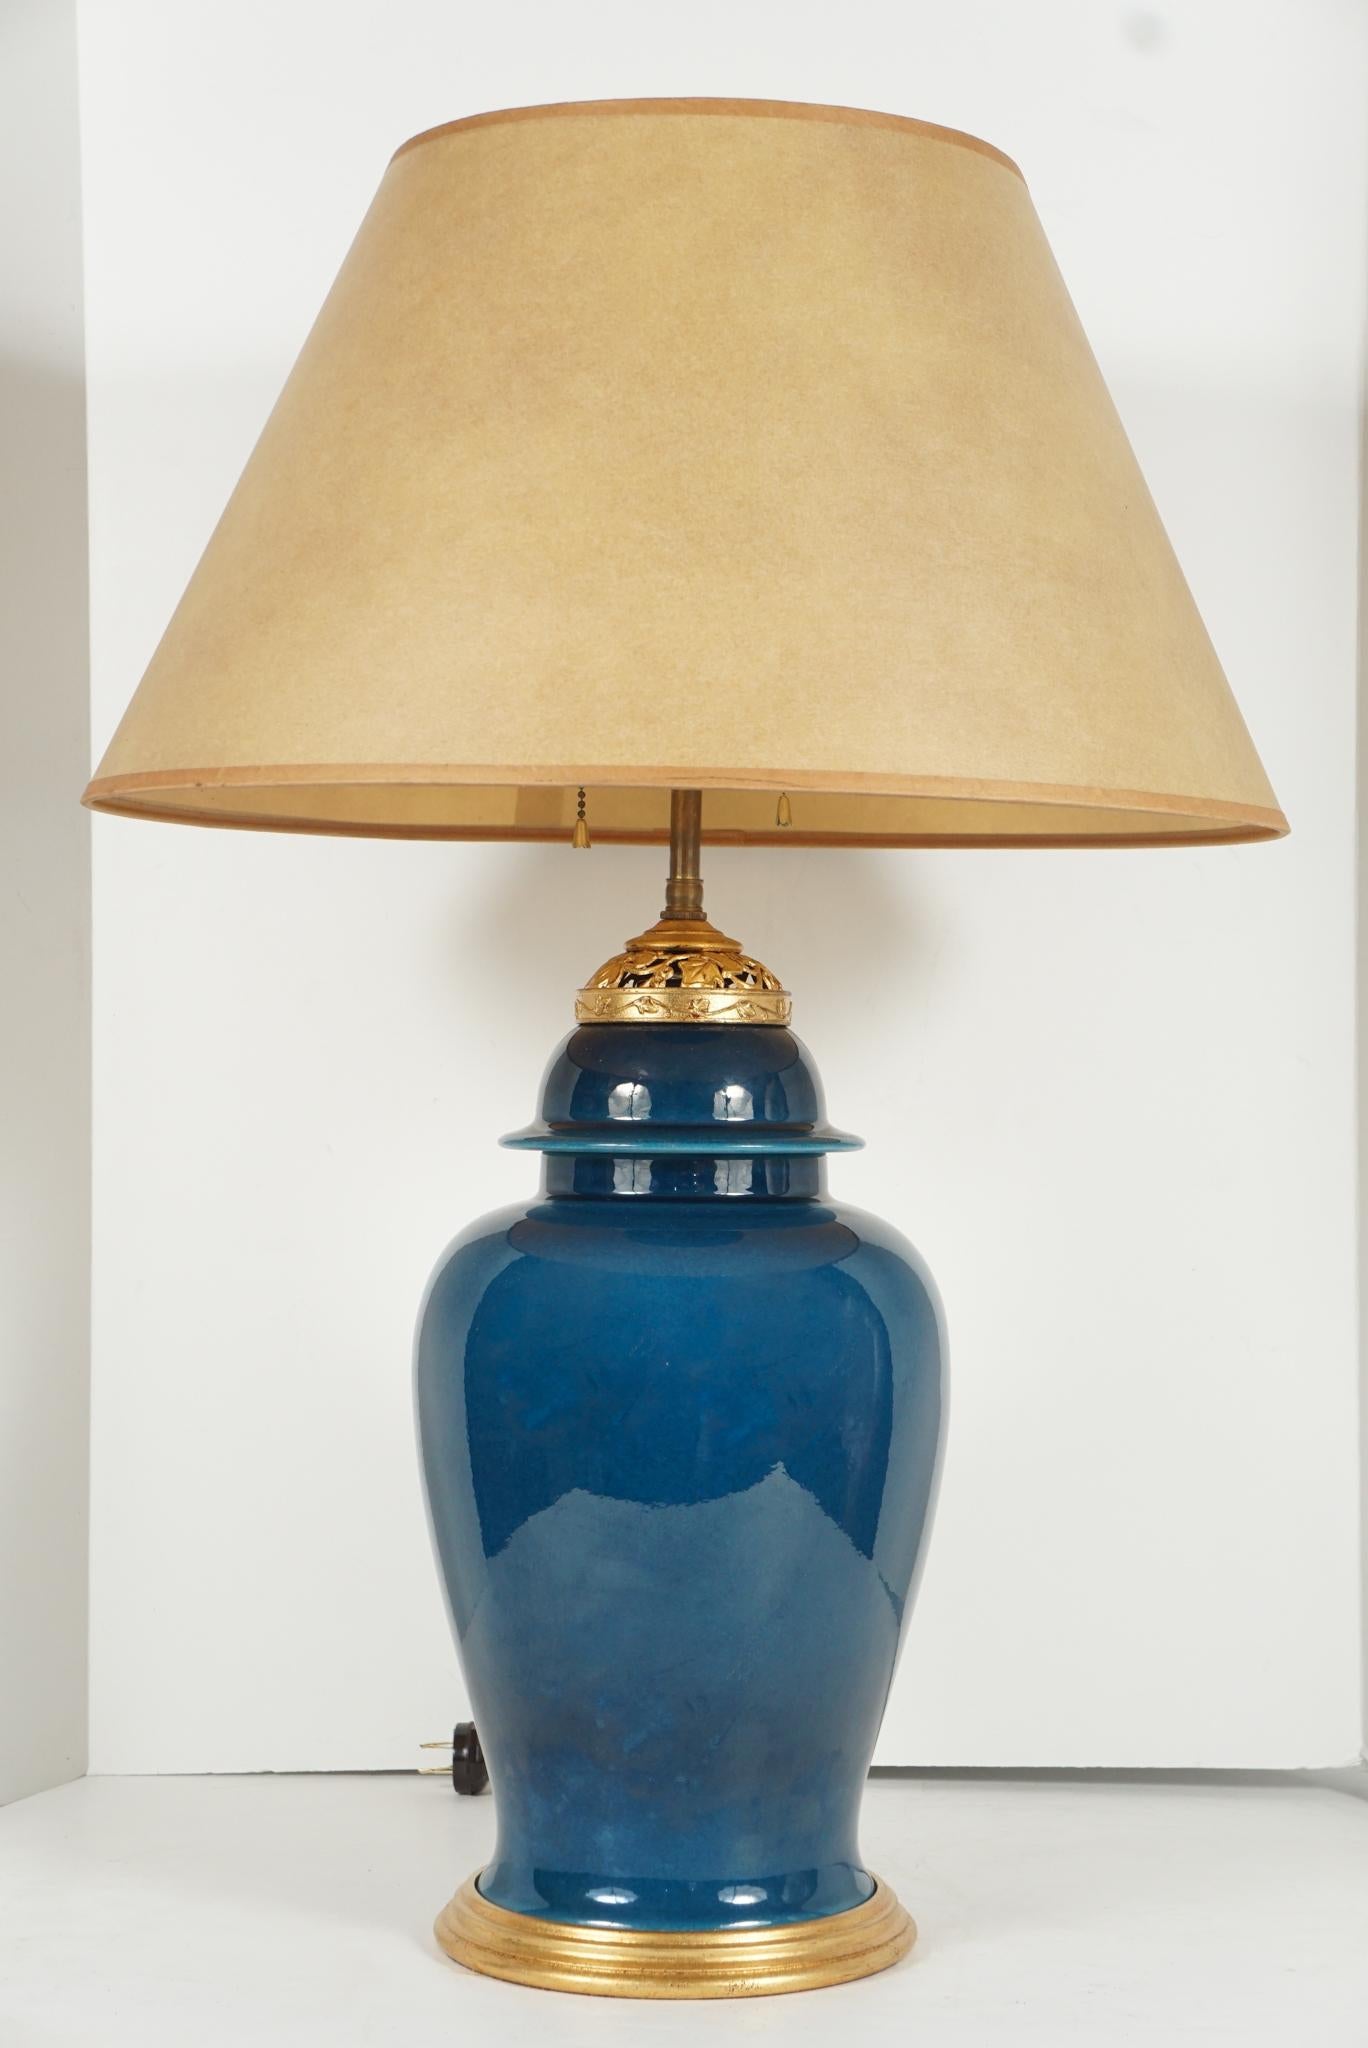 Dieses feine, puderblaue, monochrome Porzellangefäß wurde um 1940 hergestellt und mit vergoldeten Beschlägen aus einem Ingwerkrug des 20. Jahrhunderts versehen. Das Gefäß kann älter sein oder aus einer zeitgenössischen Töpferei stammen, die mit der